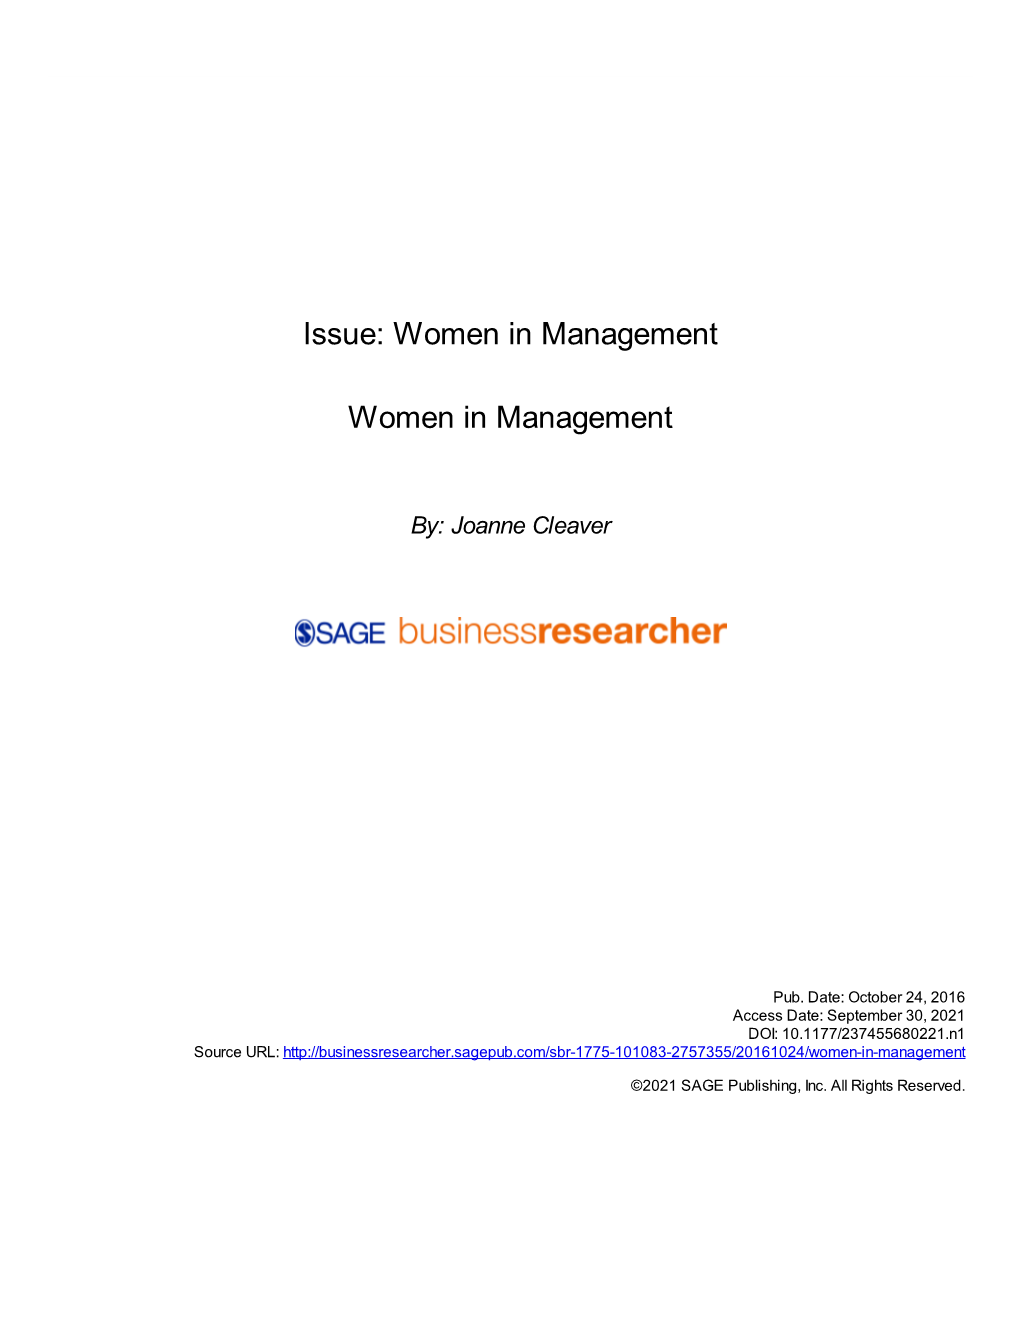 Women in Management Women in Management